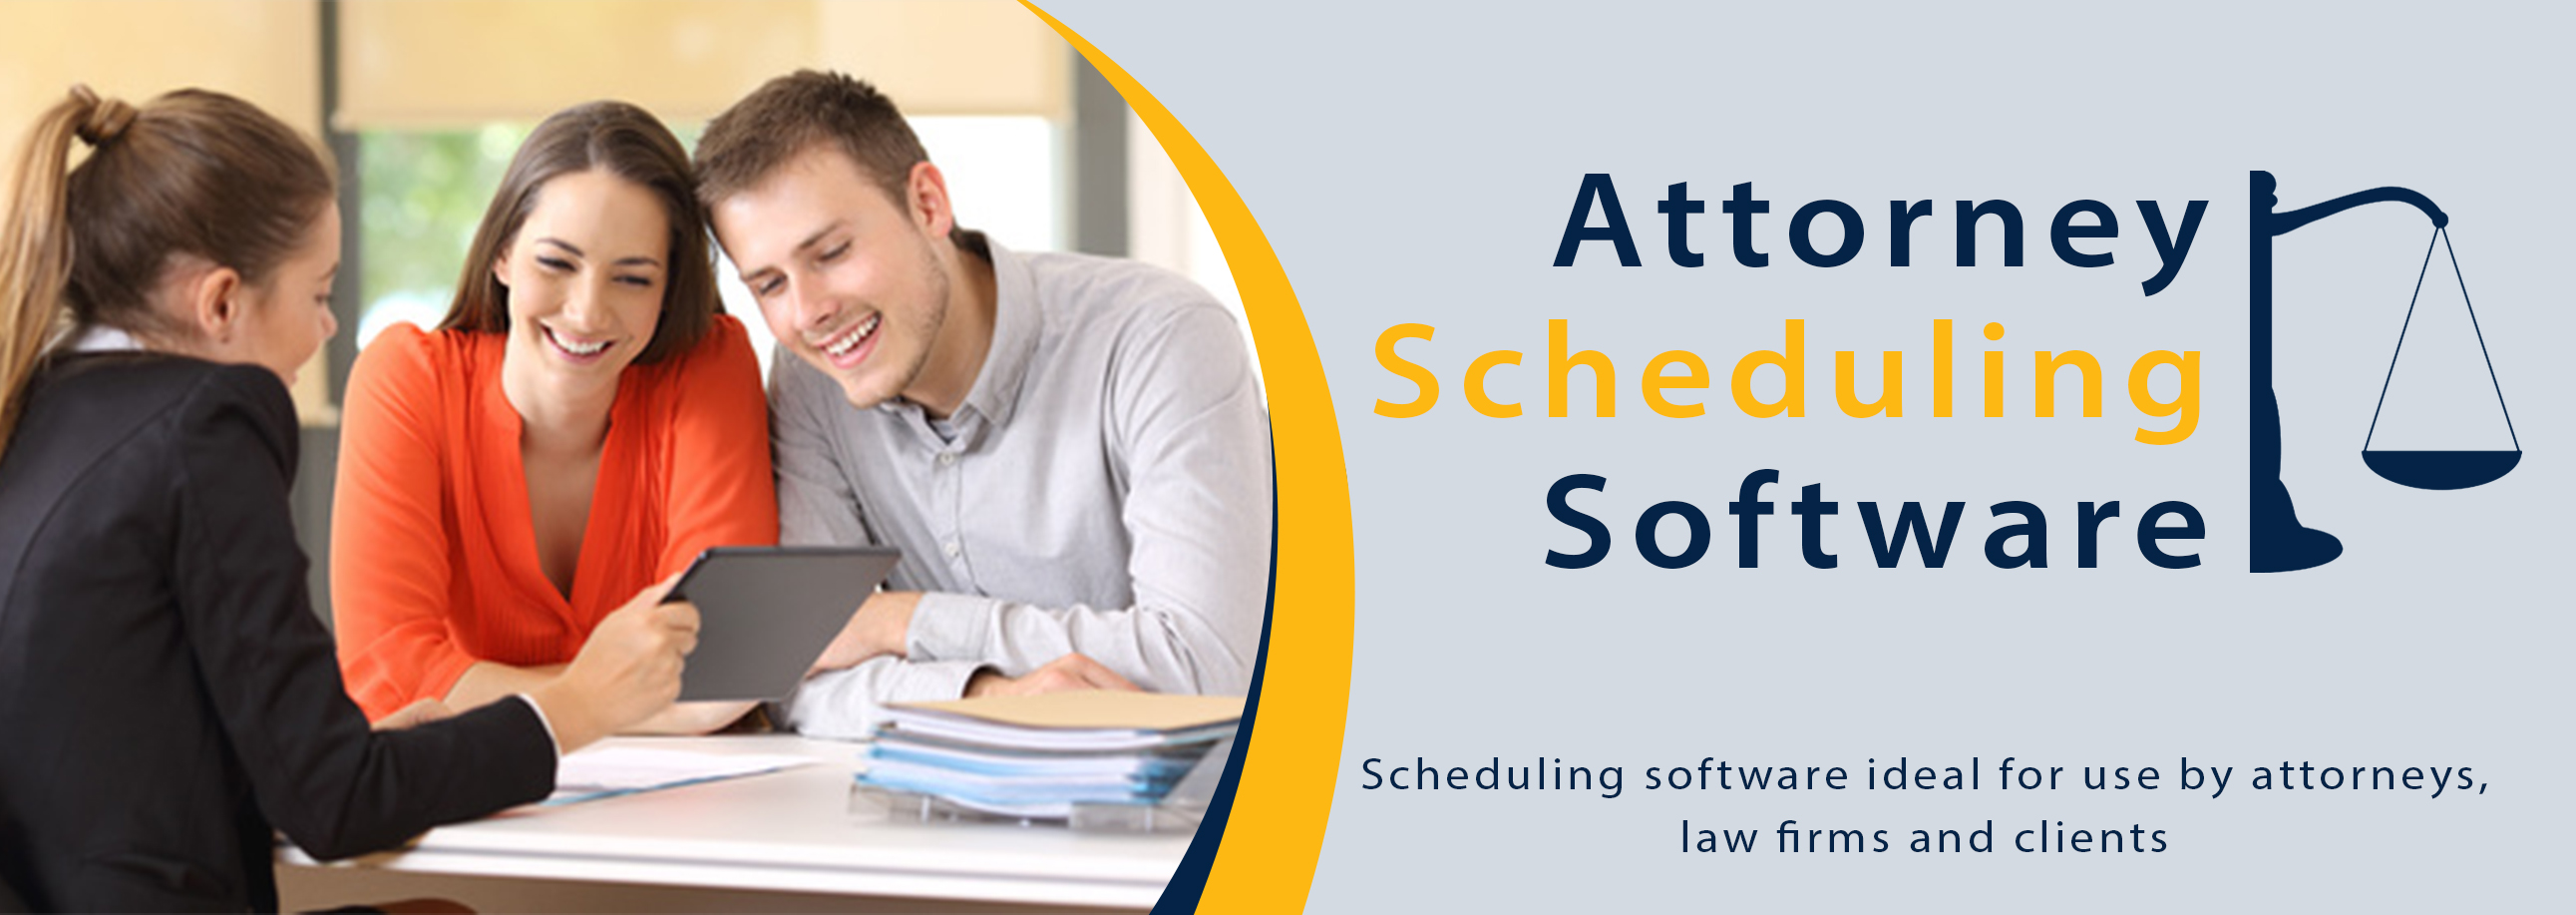 Attorney Scheduling Software GigaBook